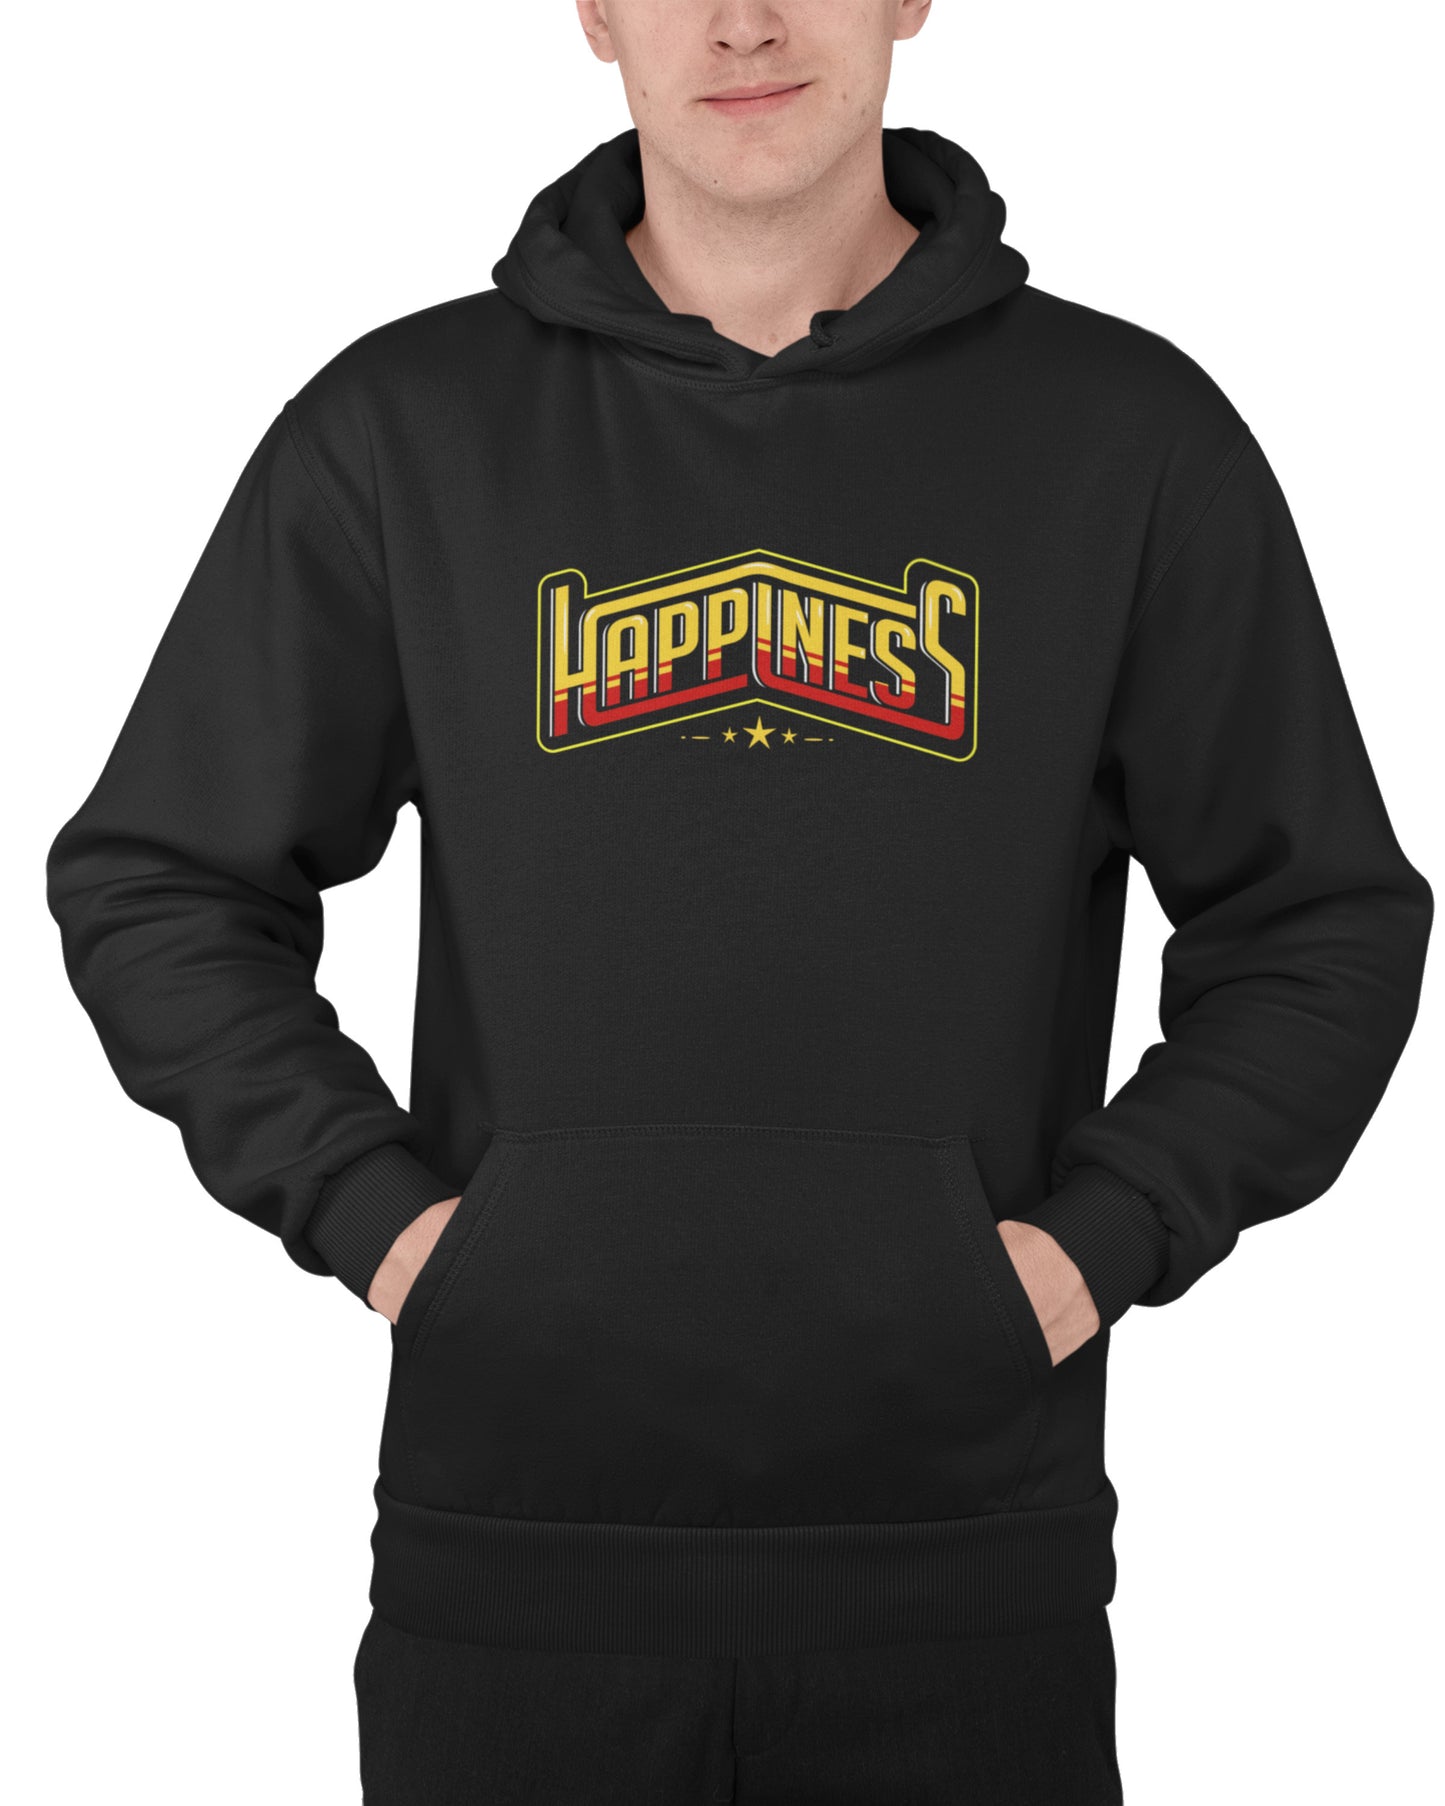 Men's Happiness Hoodie (Fleece)